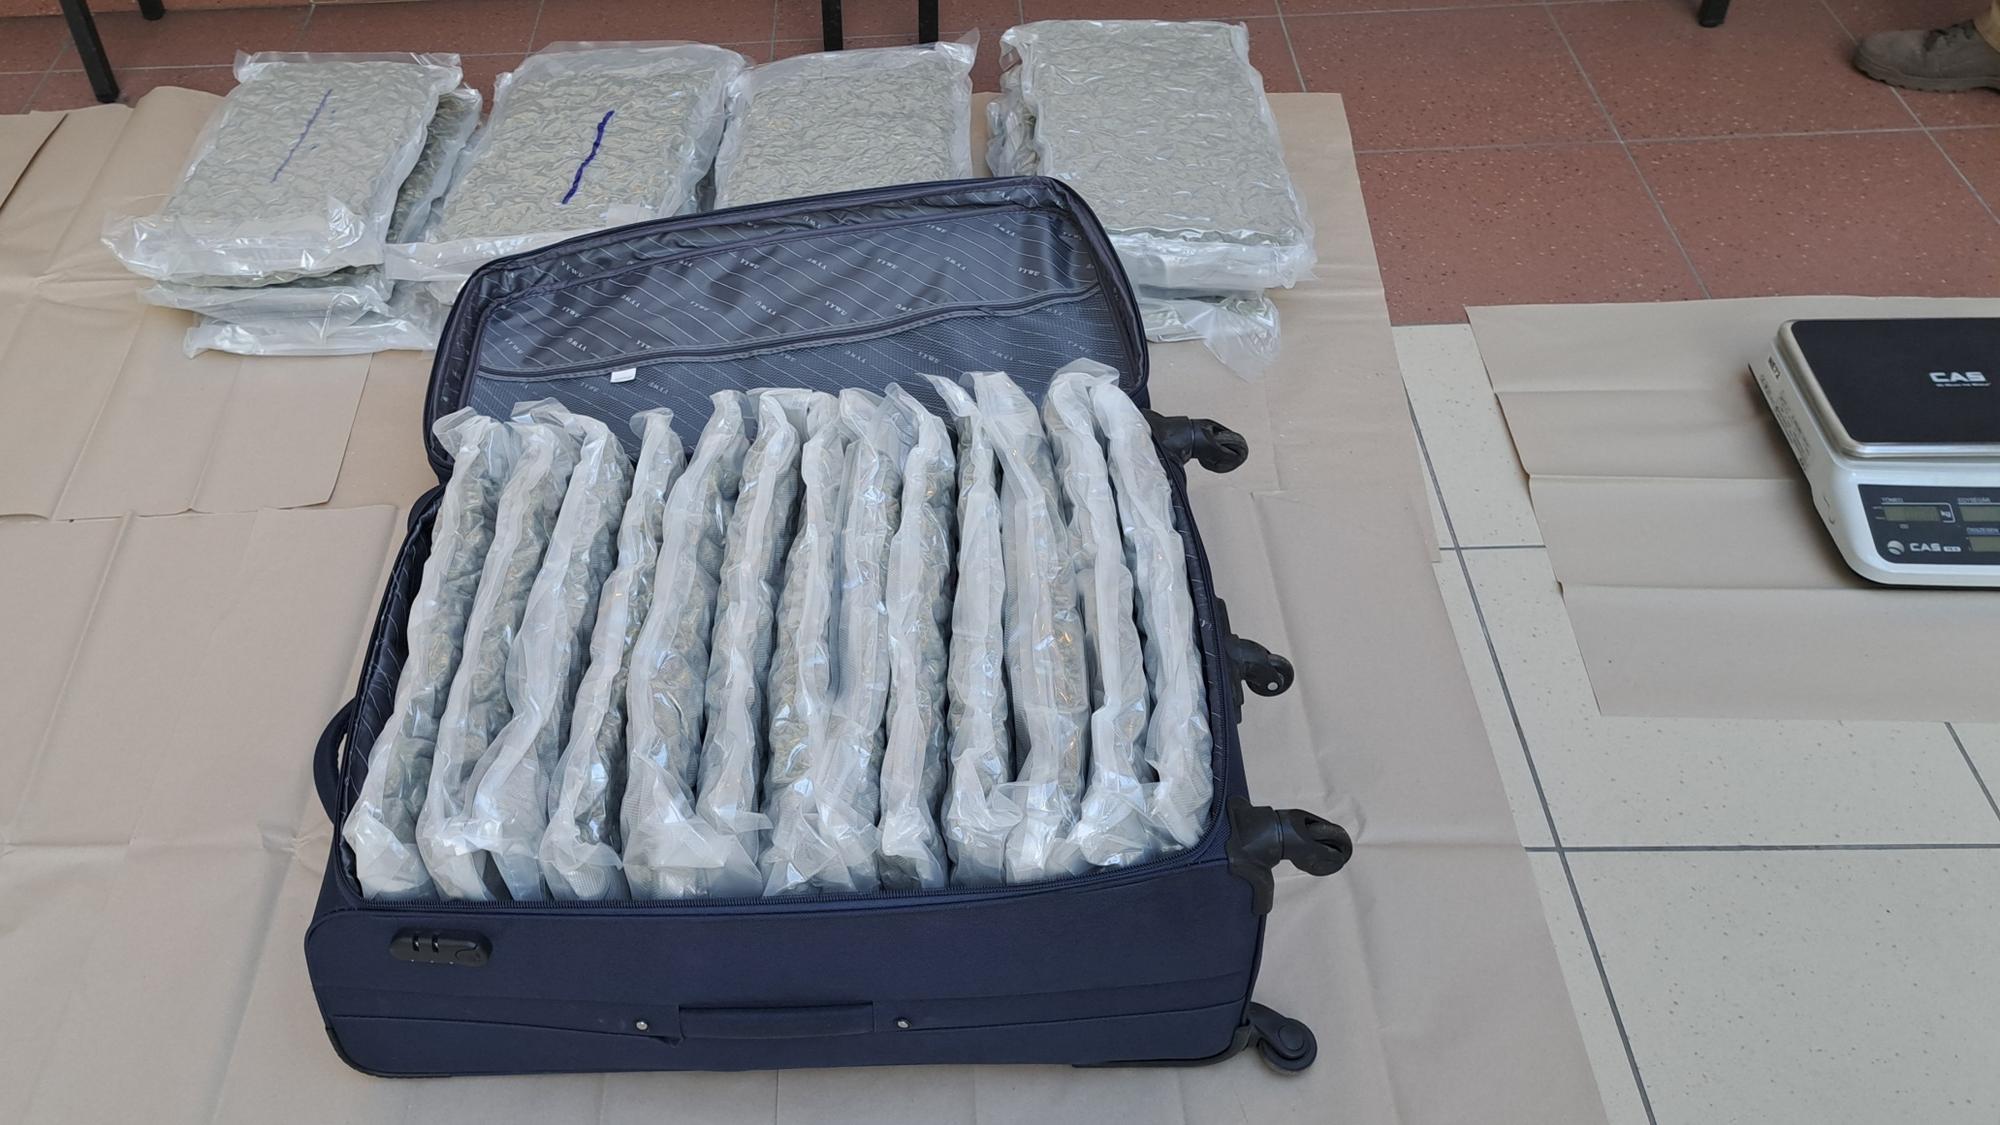 Maďarskí colníci odhalili 20 kilogramov marihuany vo dvoch balíkoch zo Španielska.